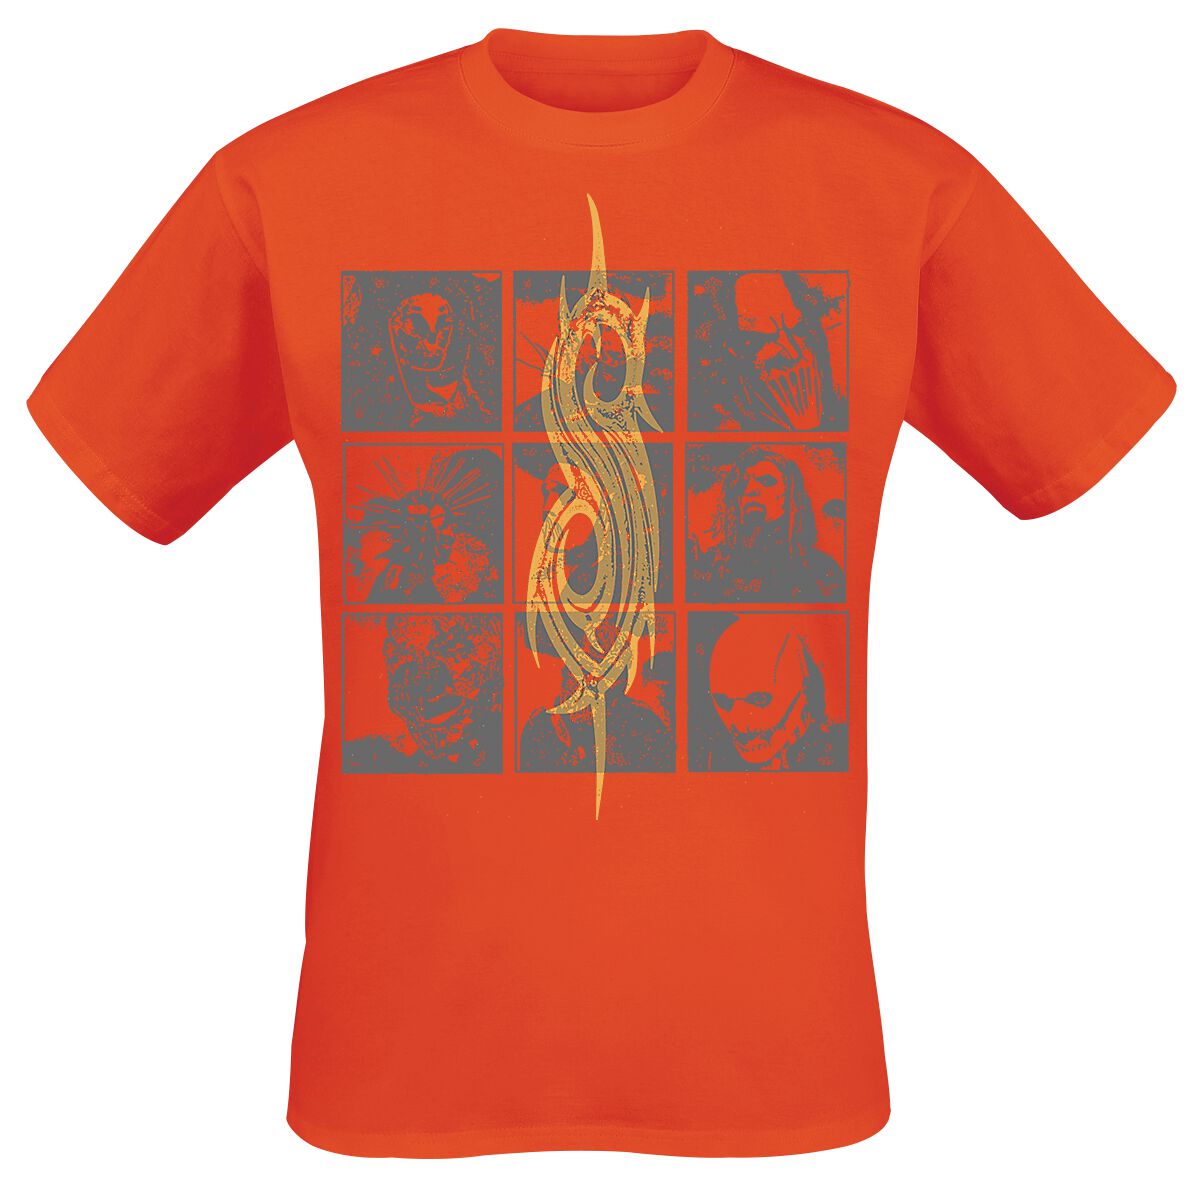 Slipknot T-Shirt - Tribal Photo Grid - S bis L - für Männer - Größe S - orange  - Lizenziertes Merchandise!